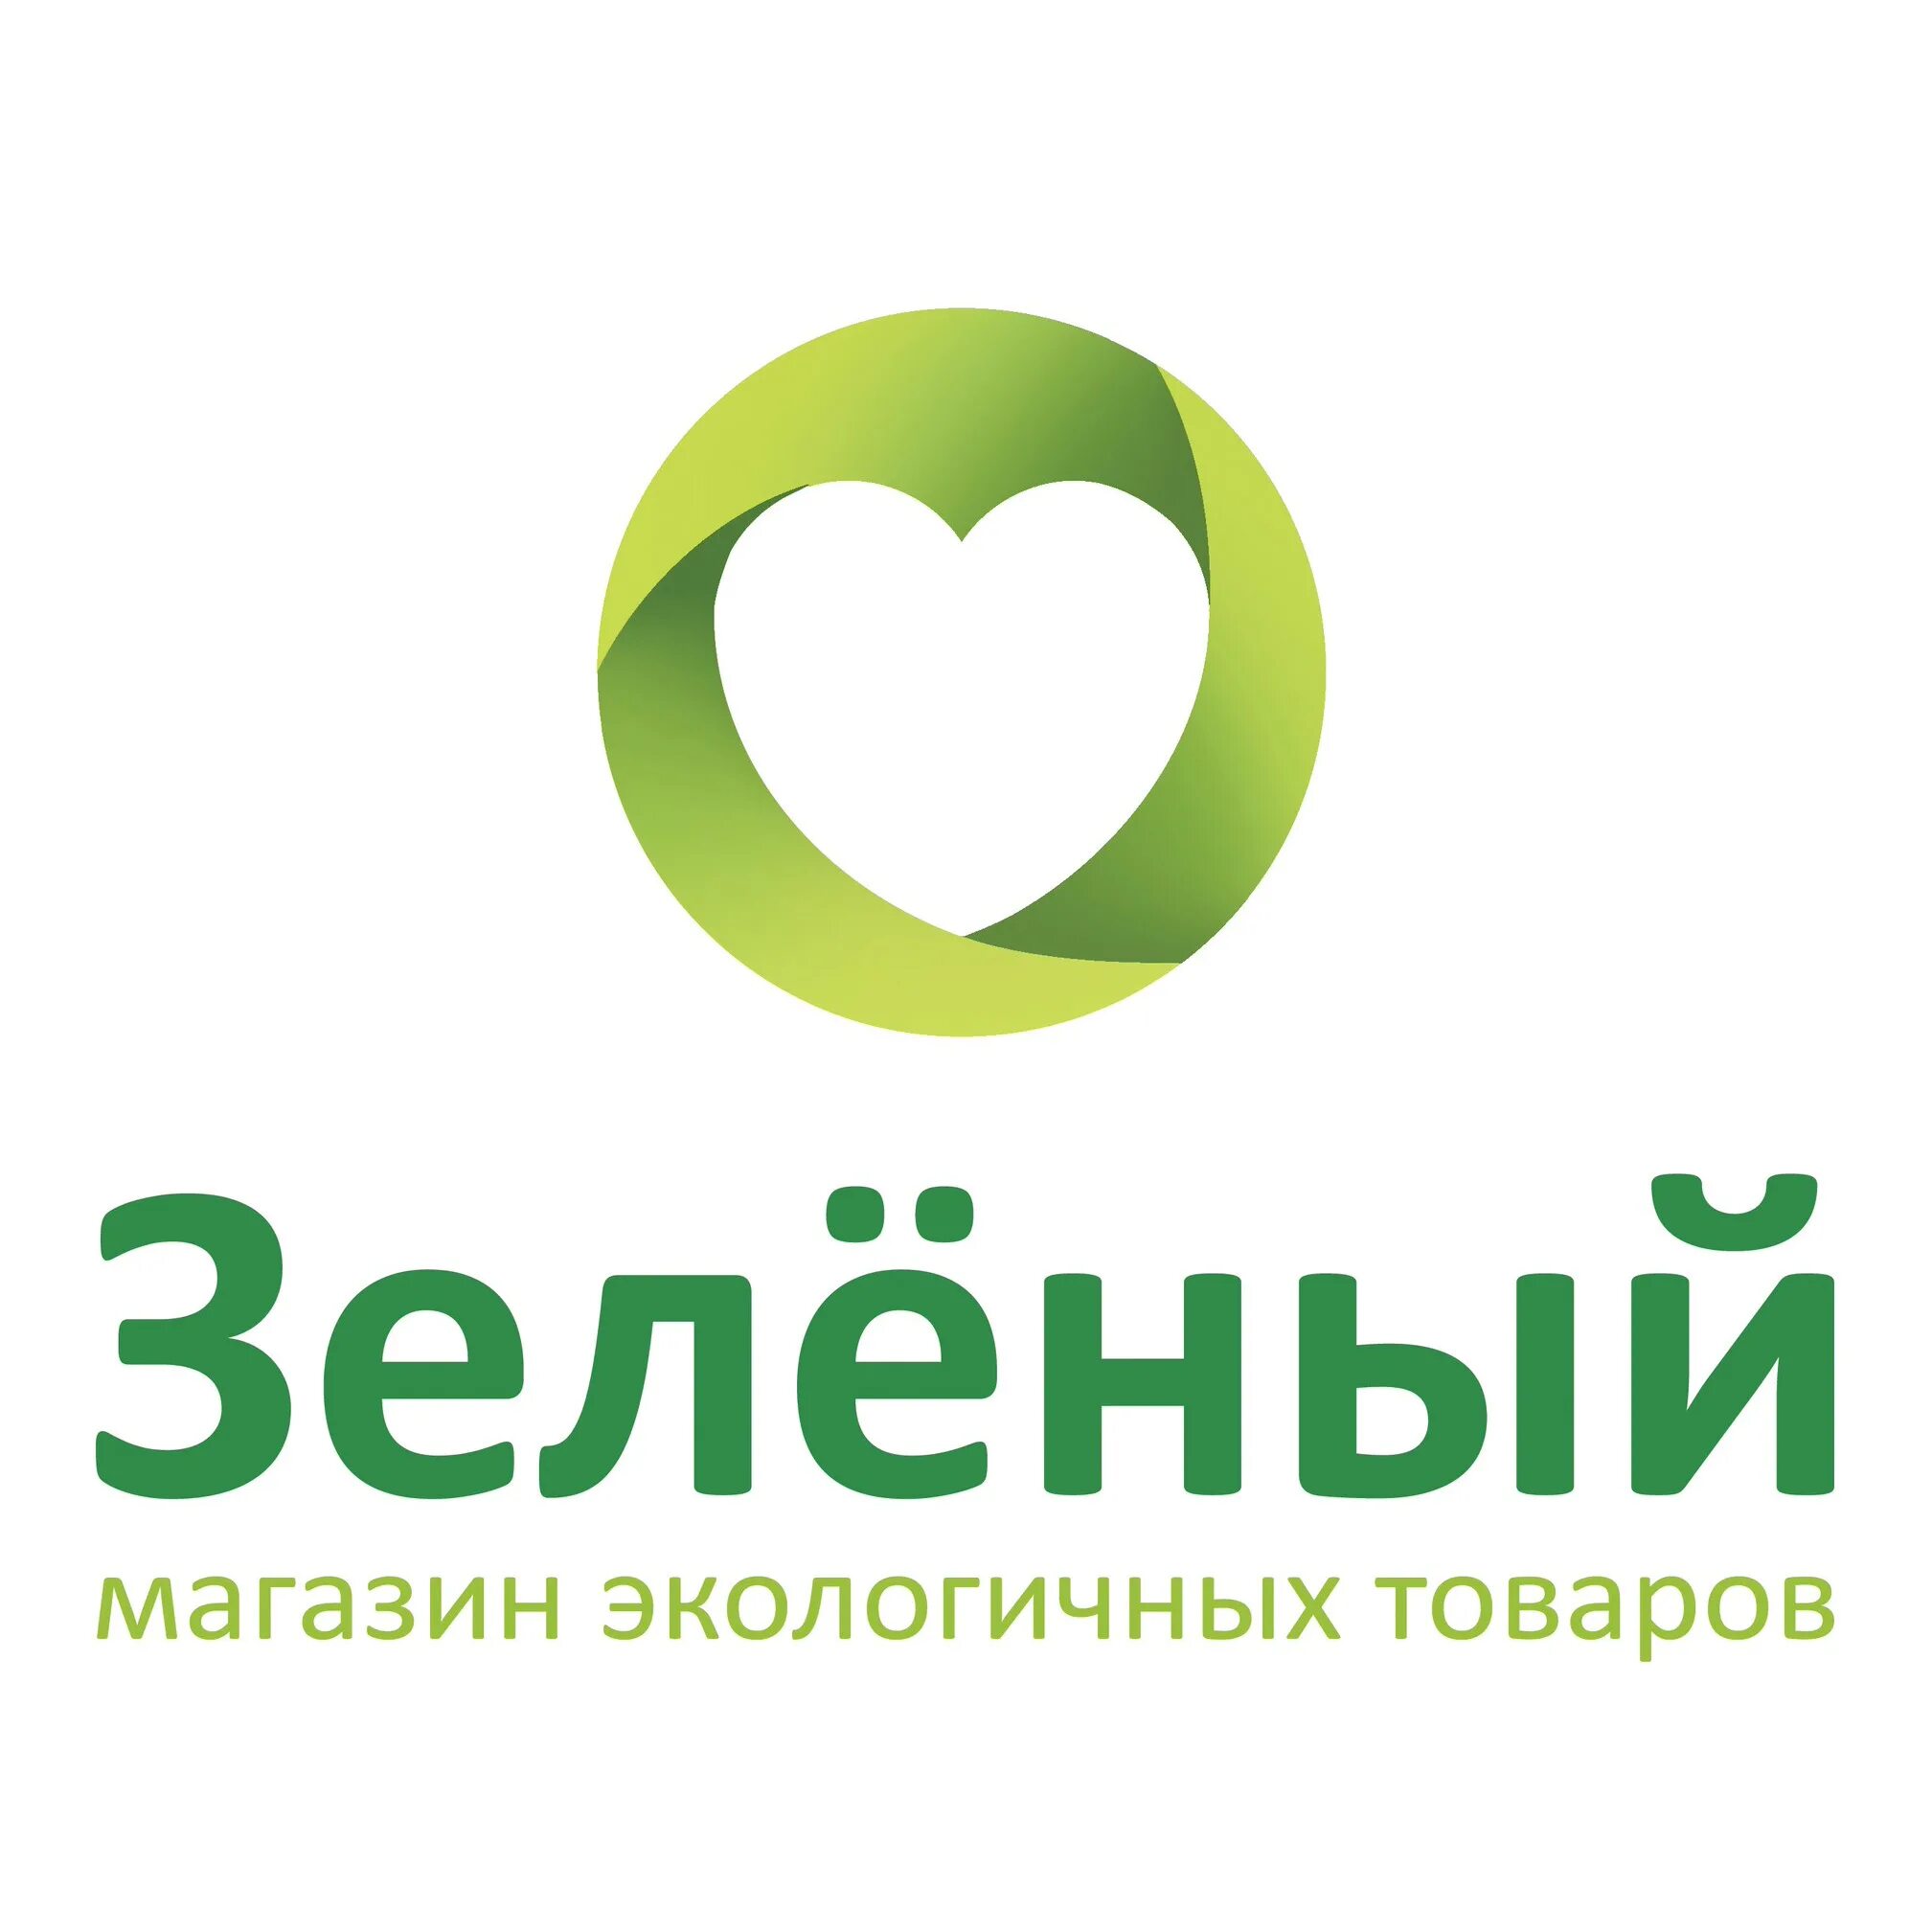 Магазин с зеленым логотипом. Зеленый магазин экологичных товаров. Зеленый магазин продуктов. Green магазин логотип.